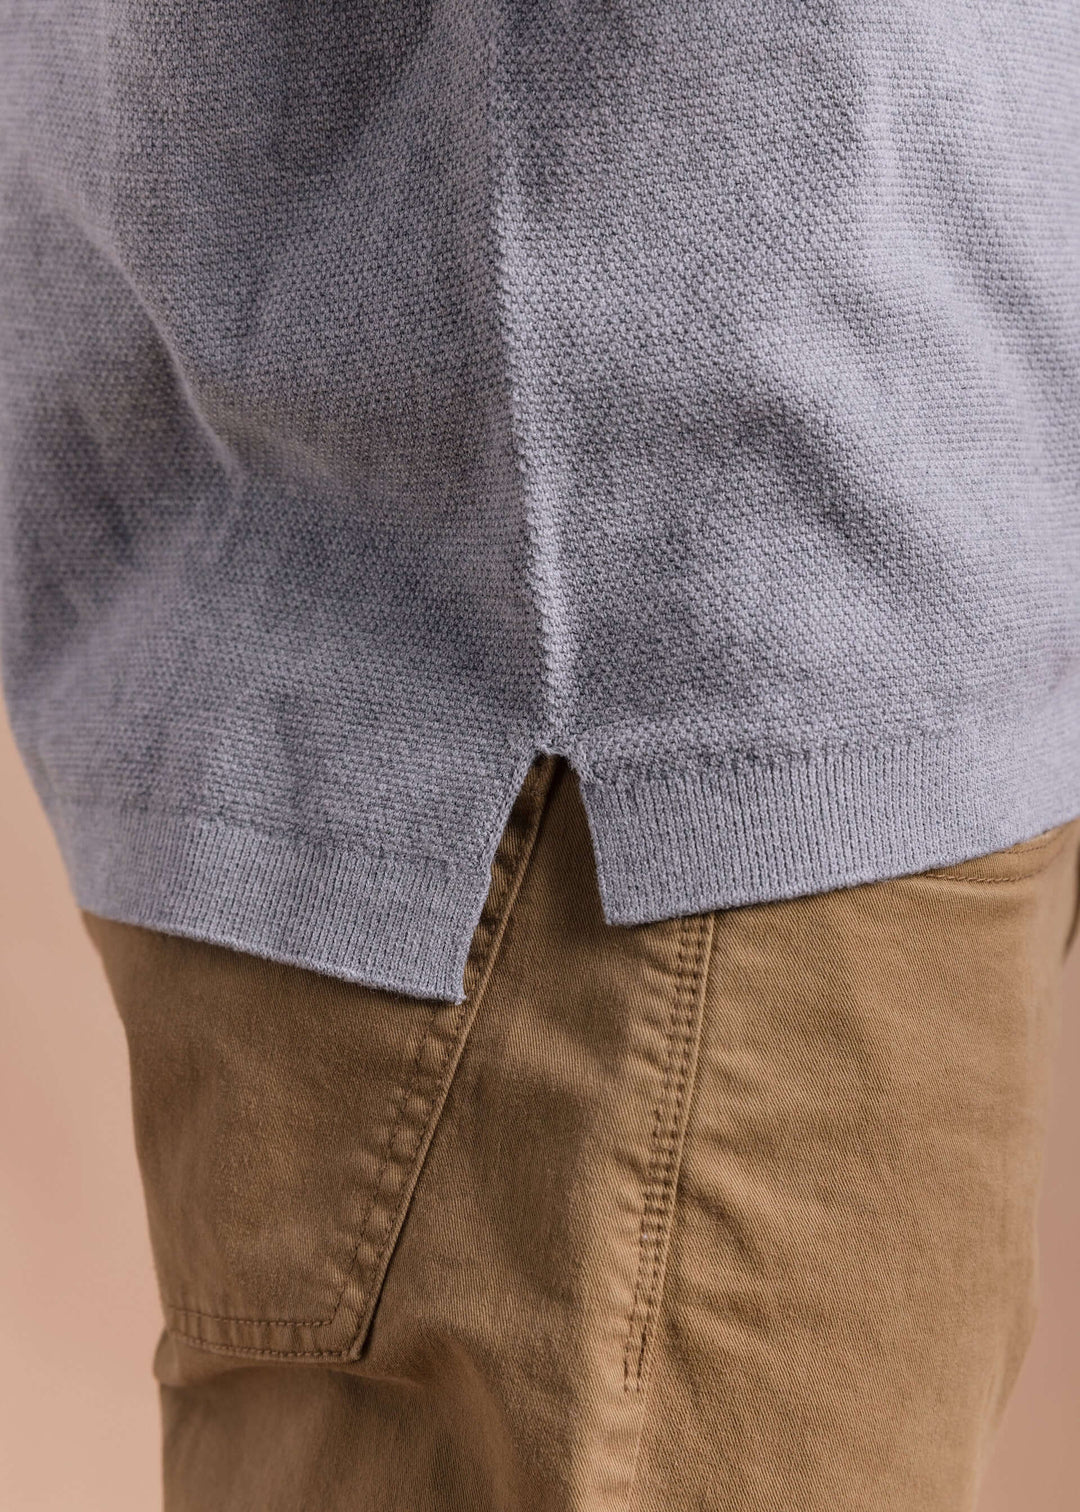 WALLY | Egyptian Cotton Short Sleeve Pique Polo